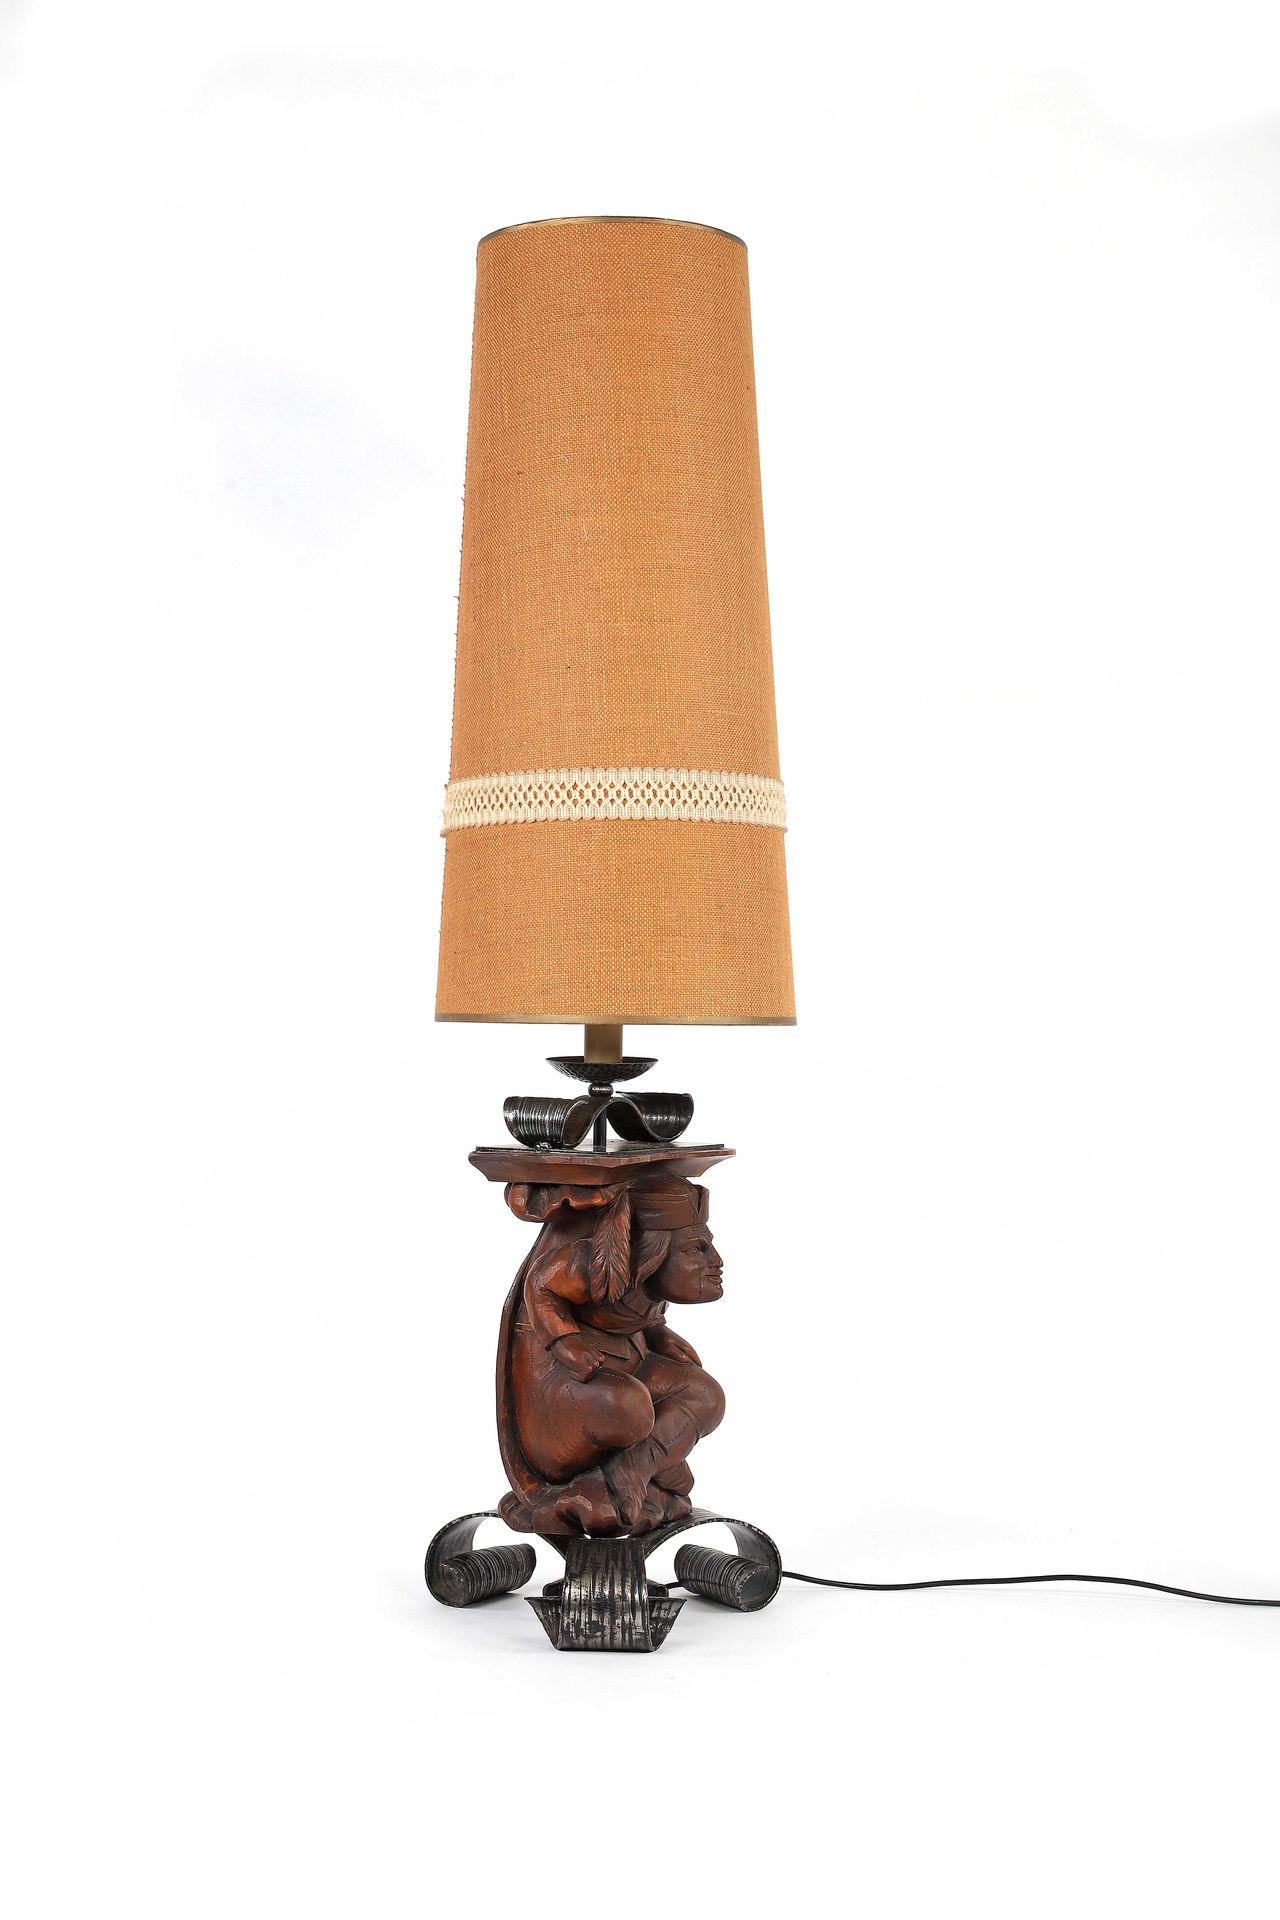 Null 让-莫里斯-罗特希尔德 (1902-1998)

灯具 木，铁，织物 高：131厘米。约1960年

大灯 木头，铁，织物 高：51.57英寸